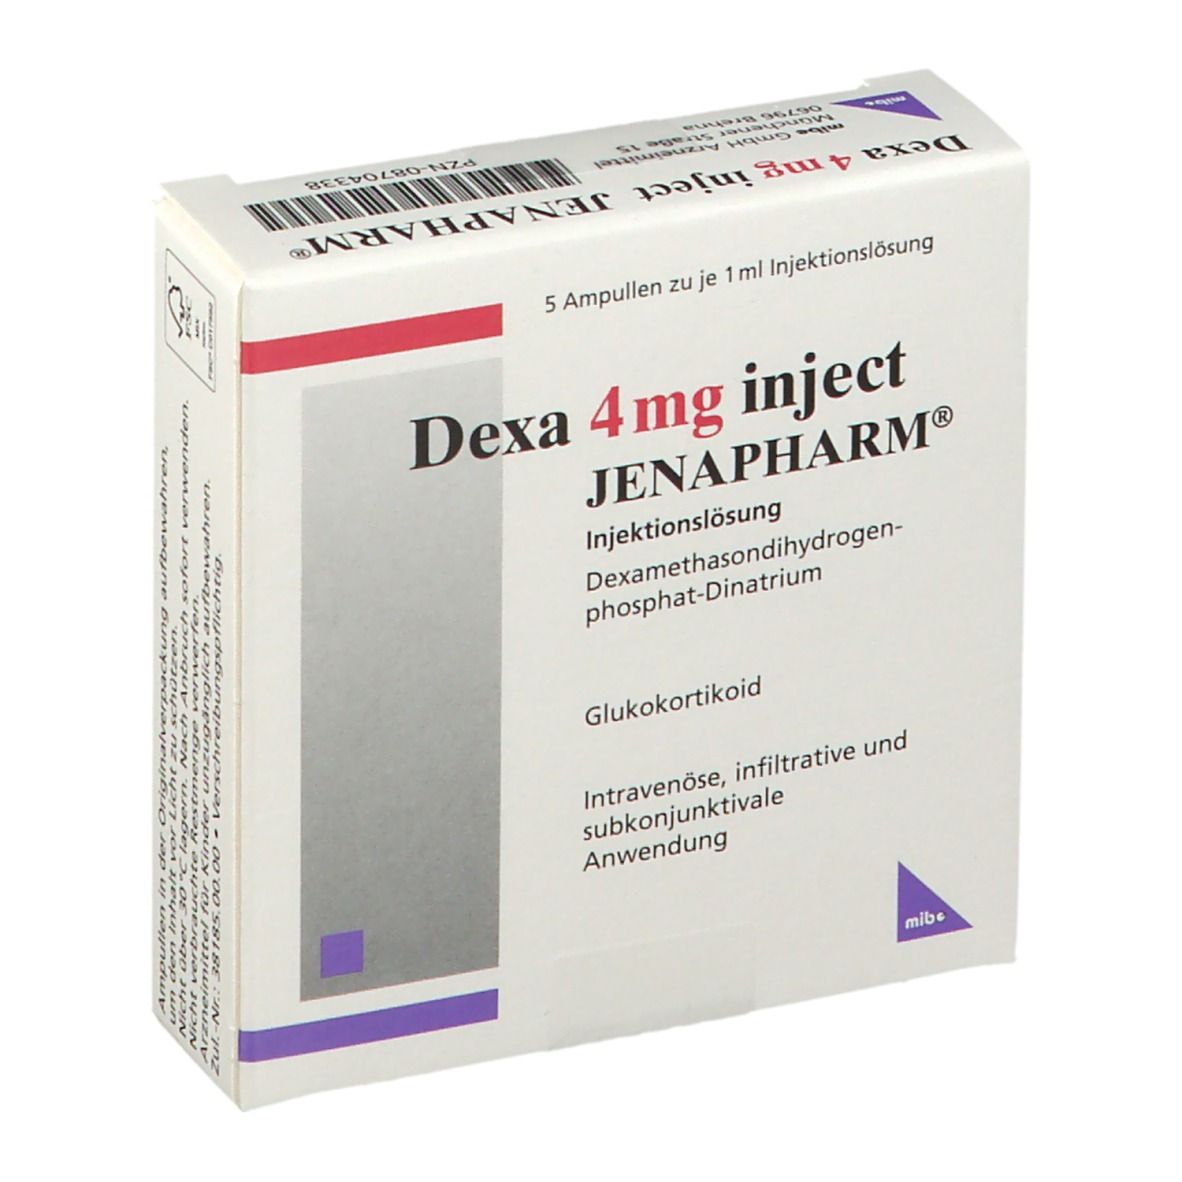 Dexa 4 mg